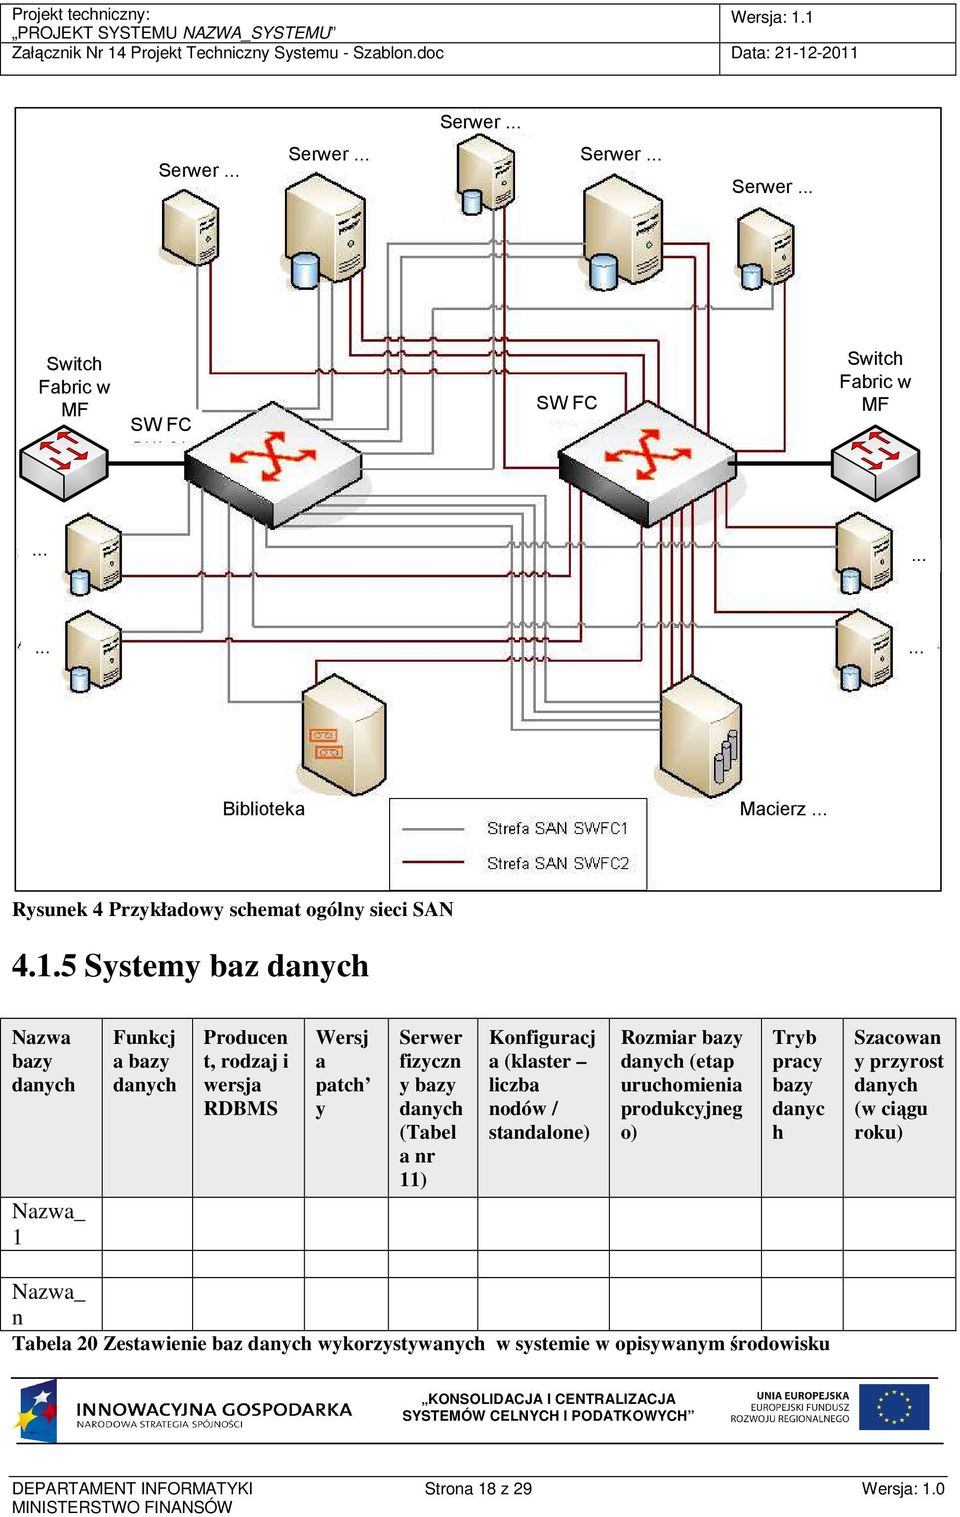 5 Systemy baz danych Nazwa bazy danych Nazwa_ 1 Funkcj a bazy danych Producen t, rodzaj i wersja RDBMS Wersj a patch y Serwer fizyczn y bazy danych (Tabel a nr 11)